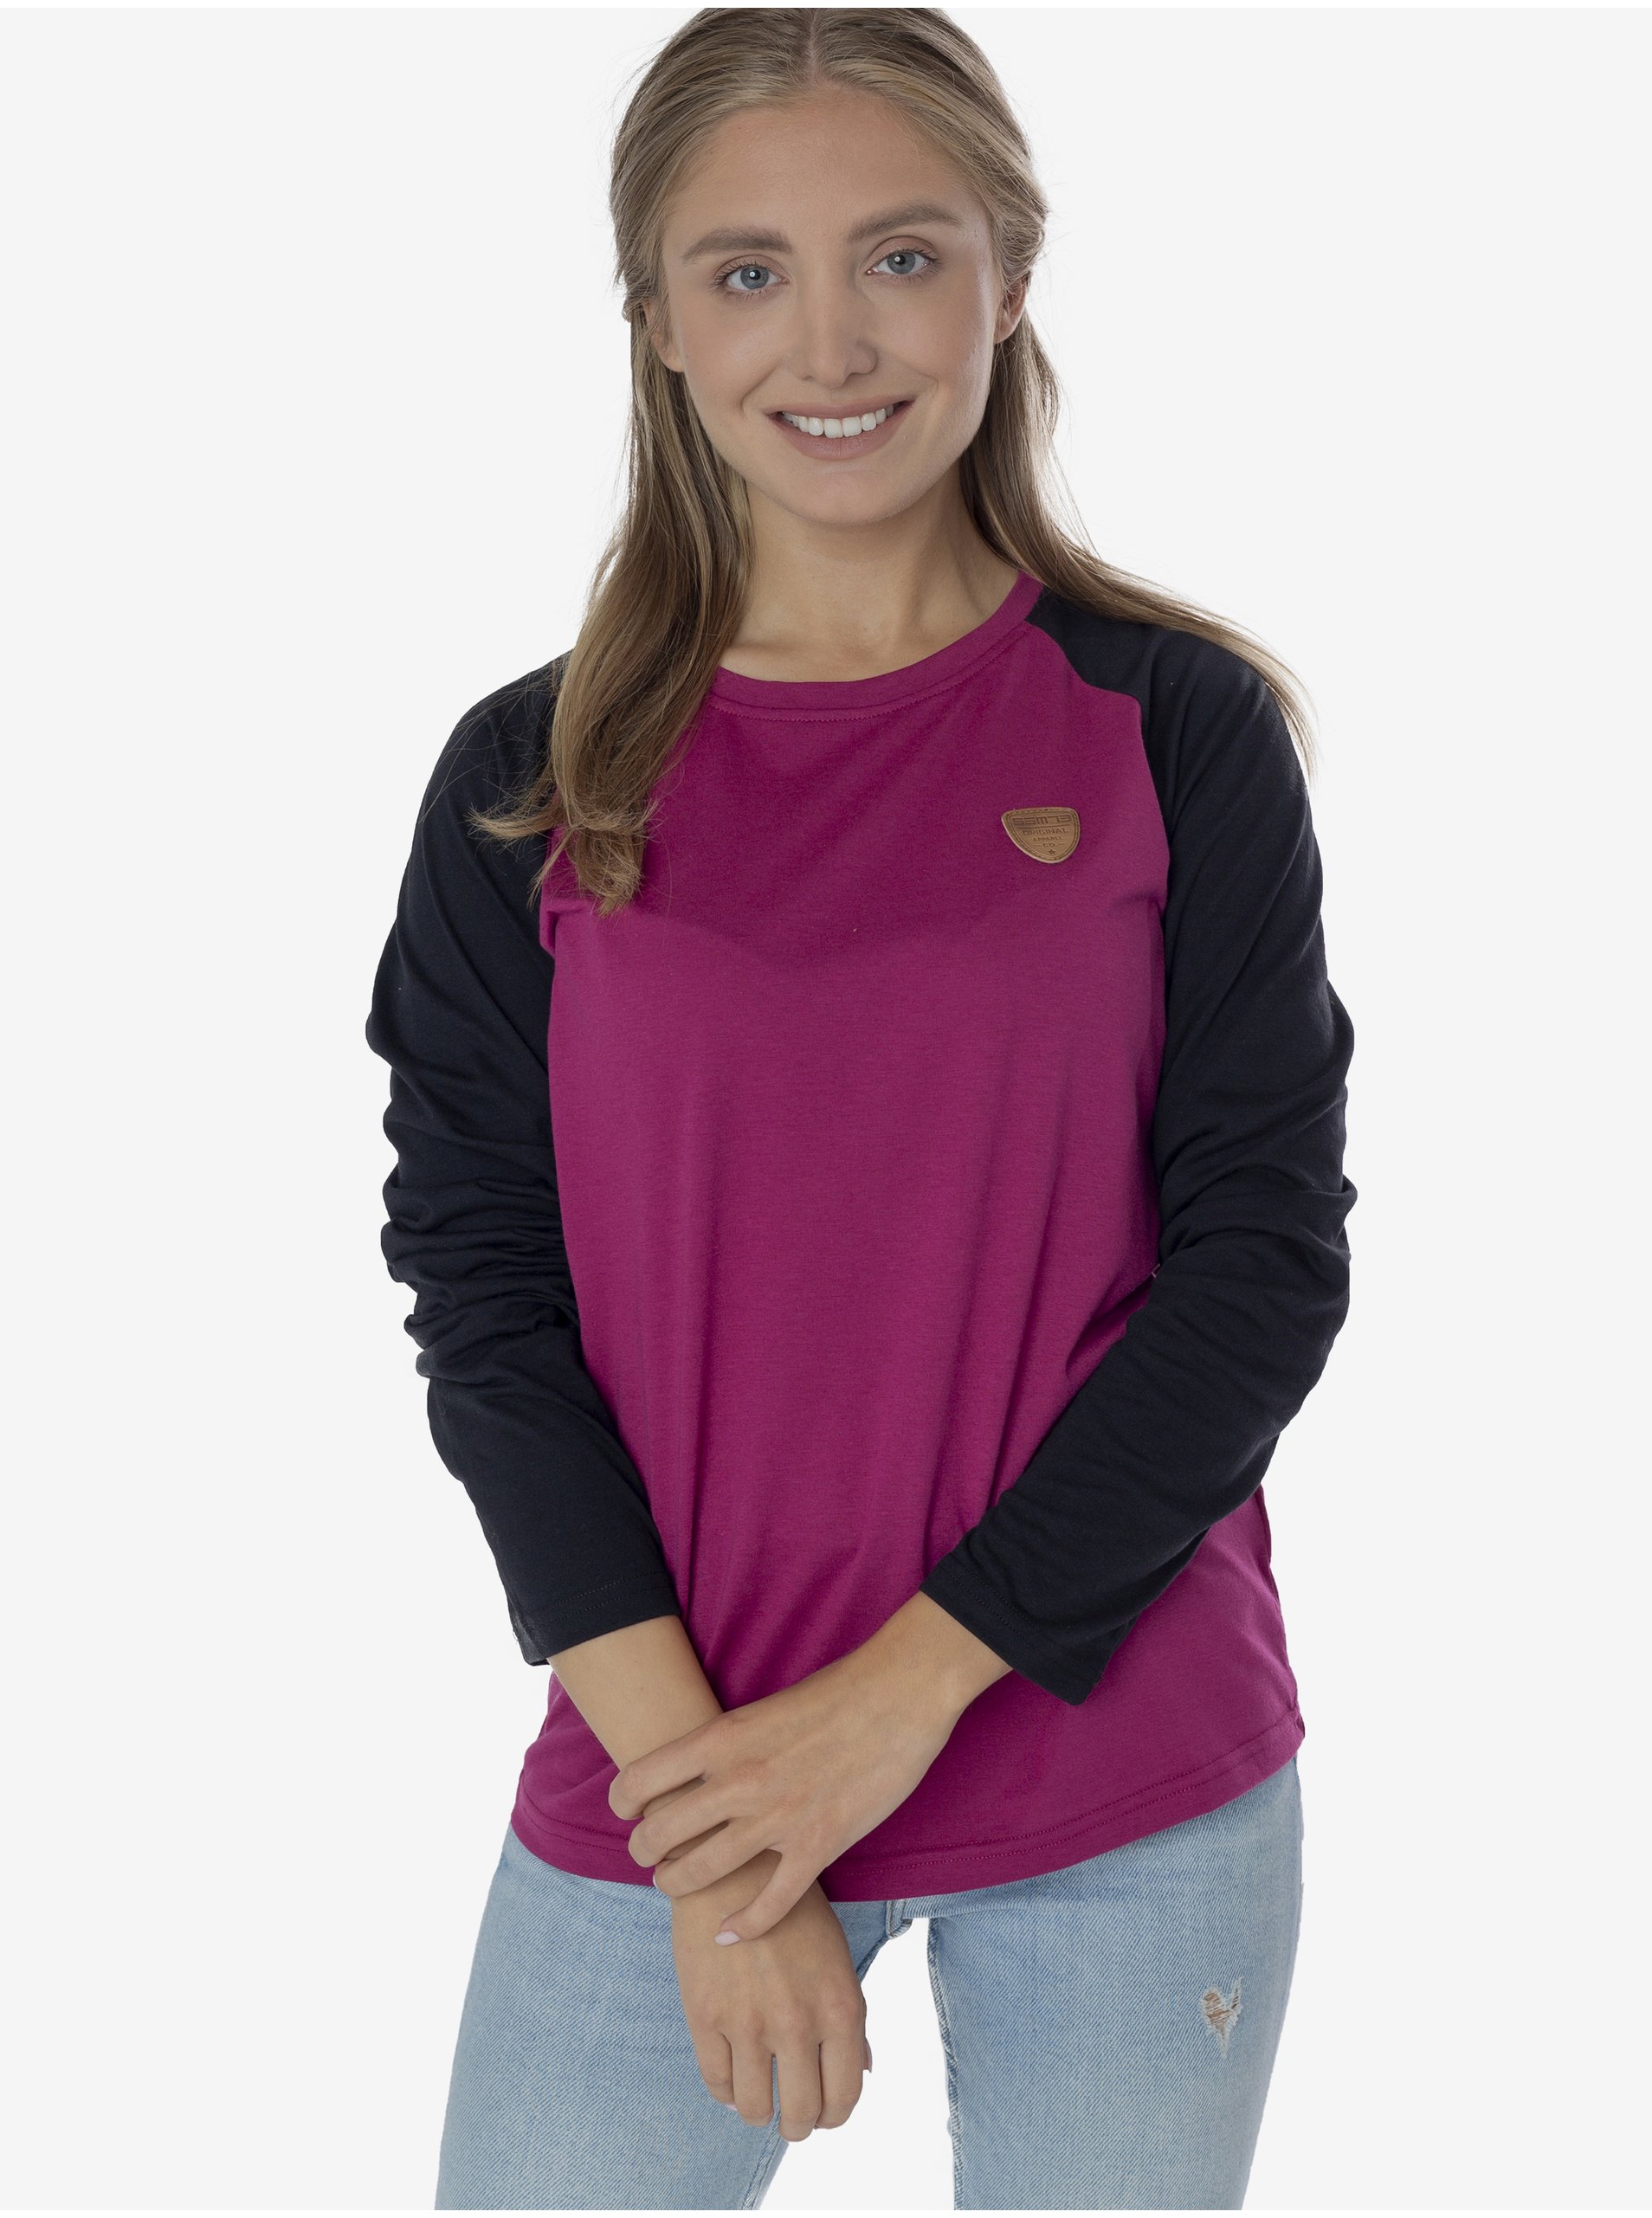 E-shop Černo-růžové dámské tričko Sam 73